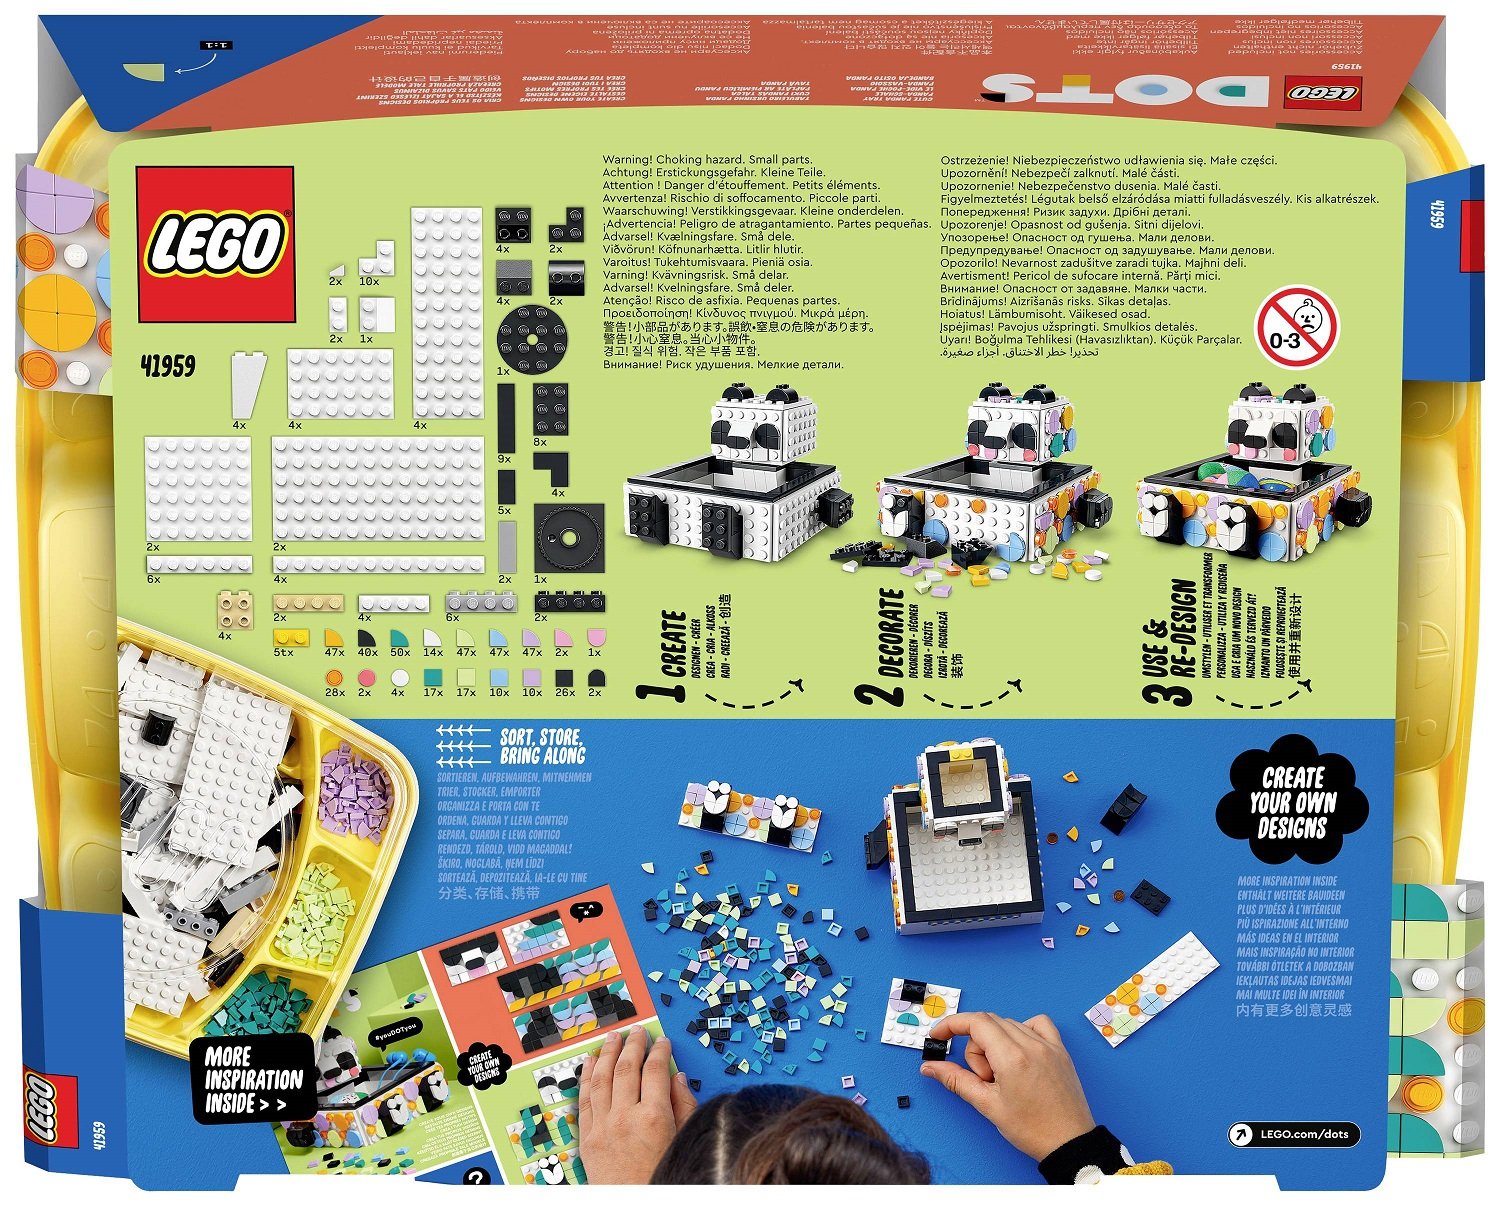 Конструктор LEGO DOTs Ящик с милой пандой, 517 деталей (41959) - фото 8